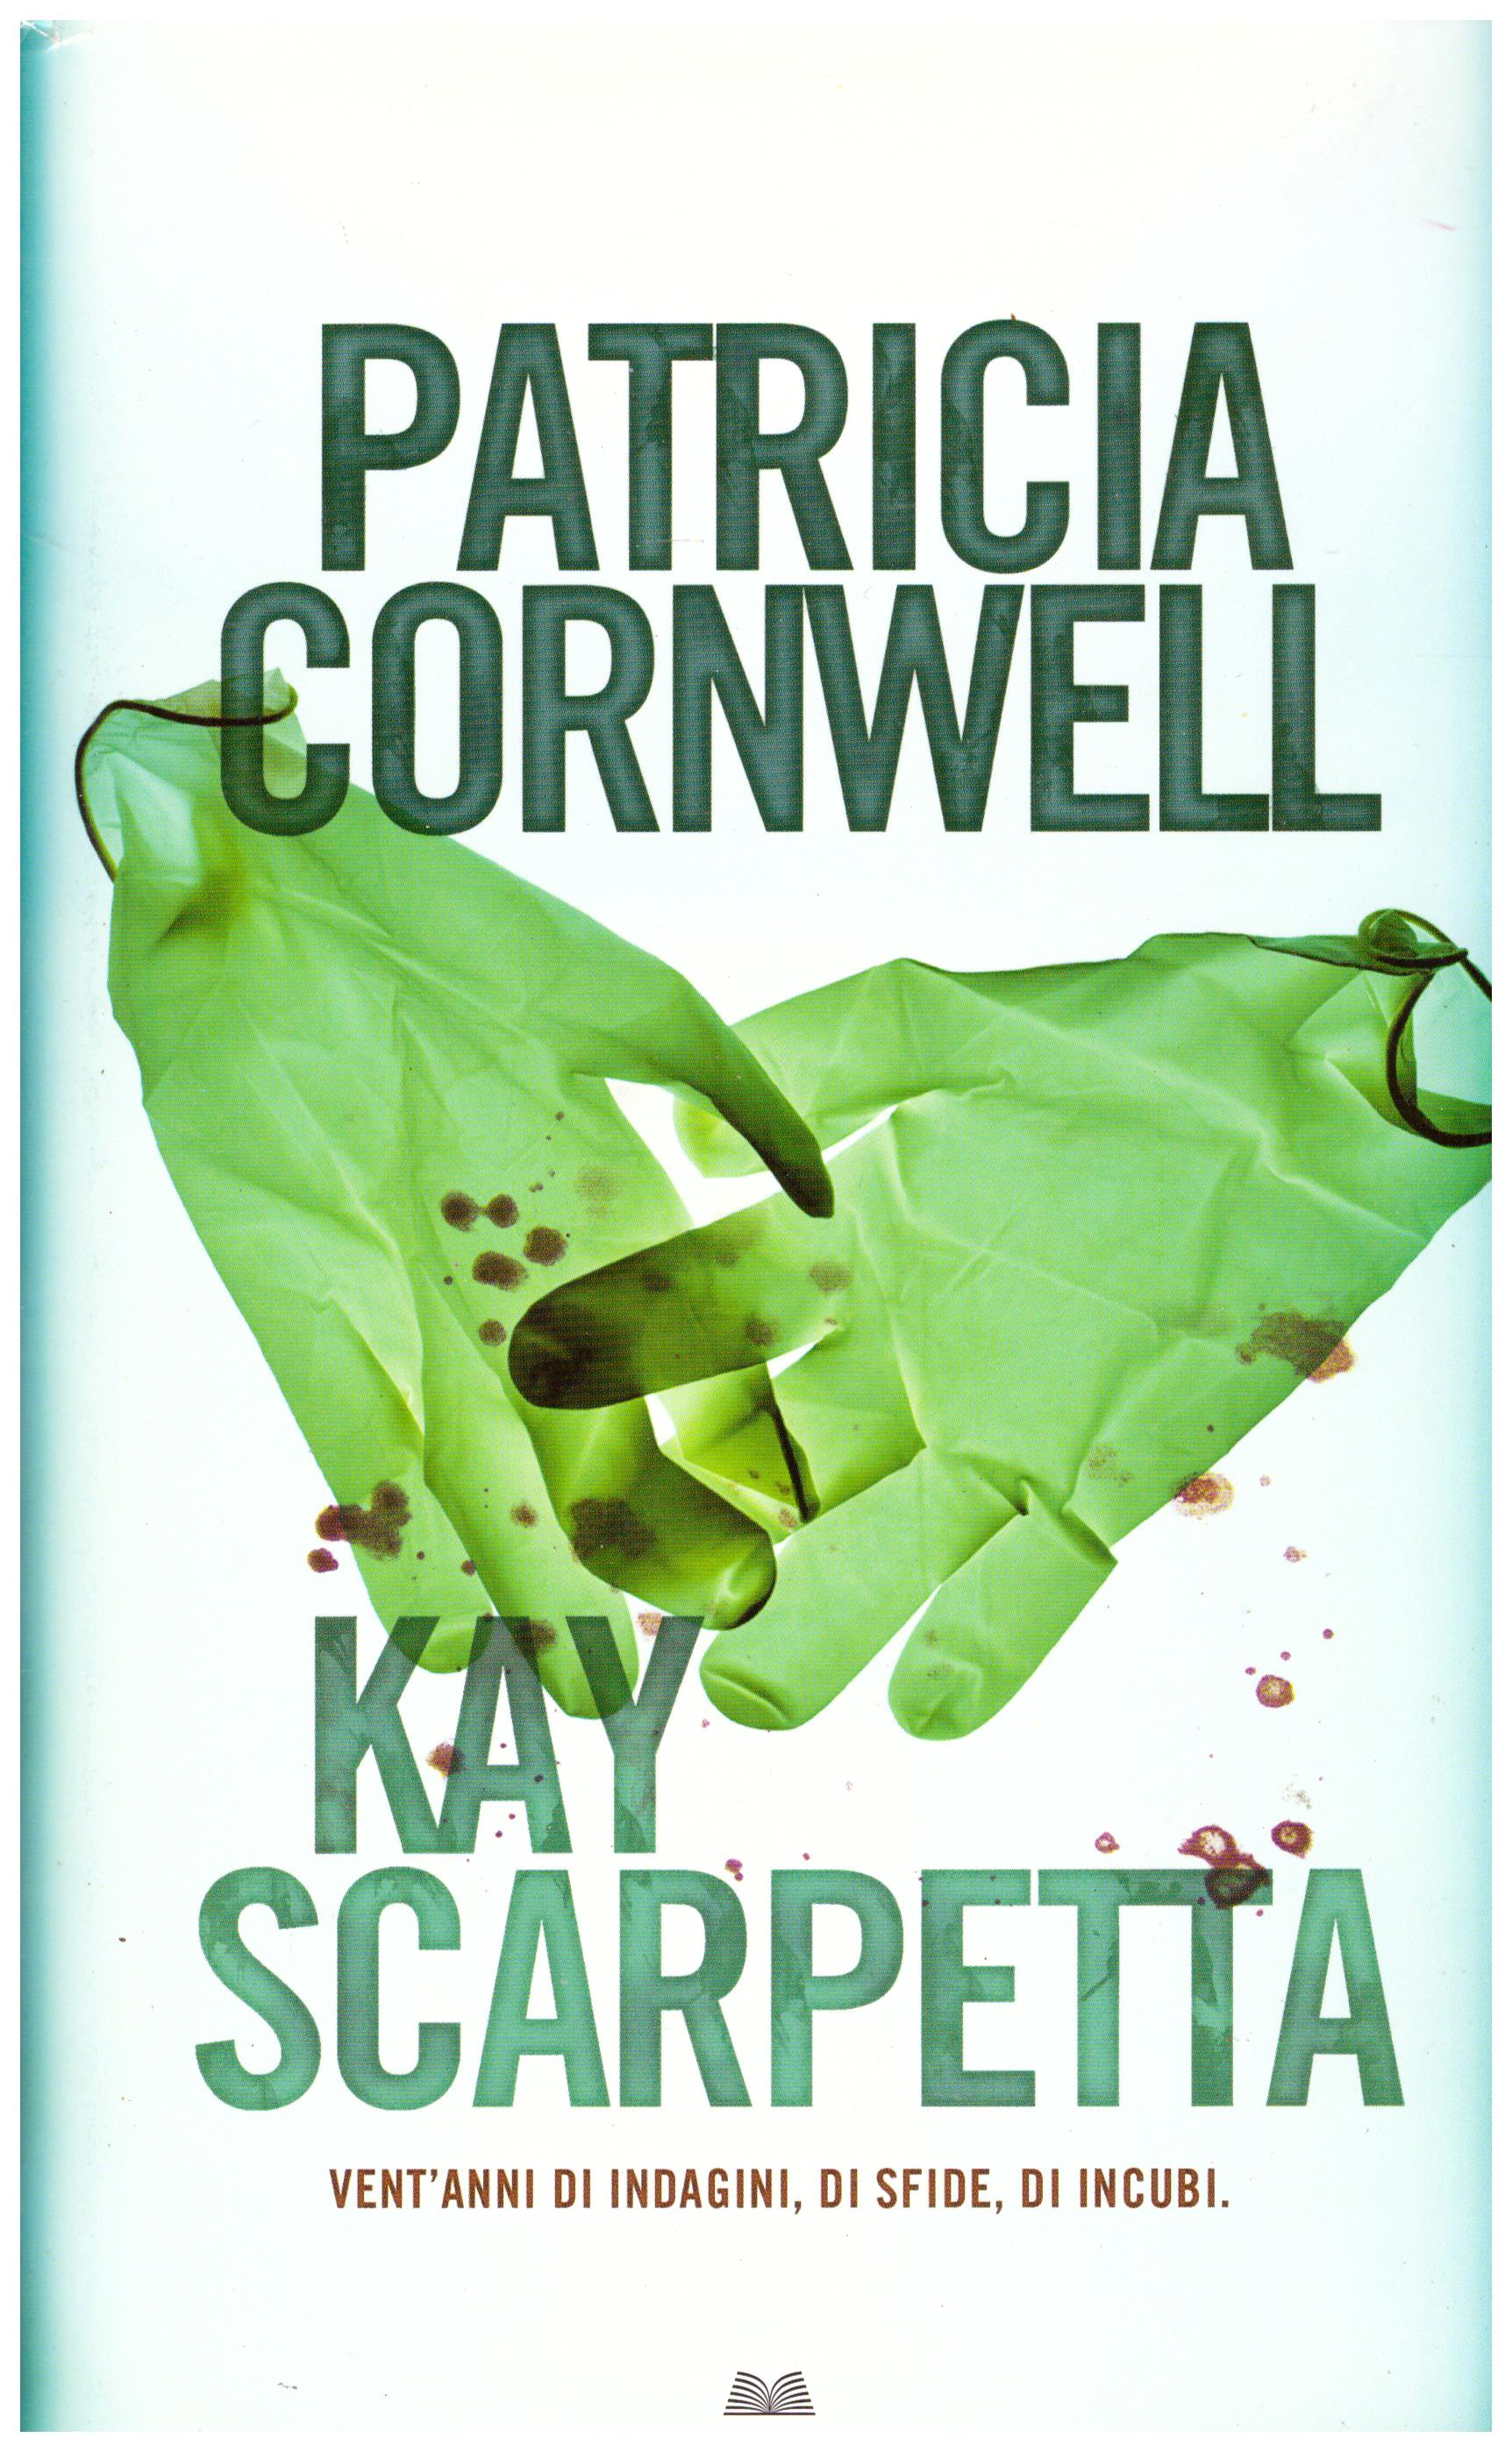 Titolo: Kay Scarpetta vent'anni di indagini, di sfide, di incubi Autore: Patricia Cornwell Editore: CEI 2009